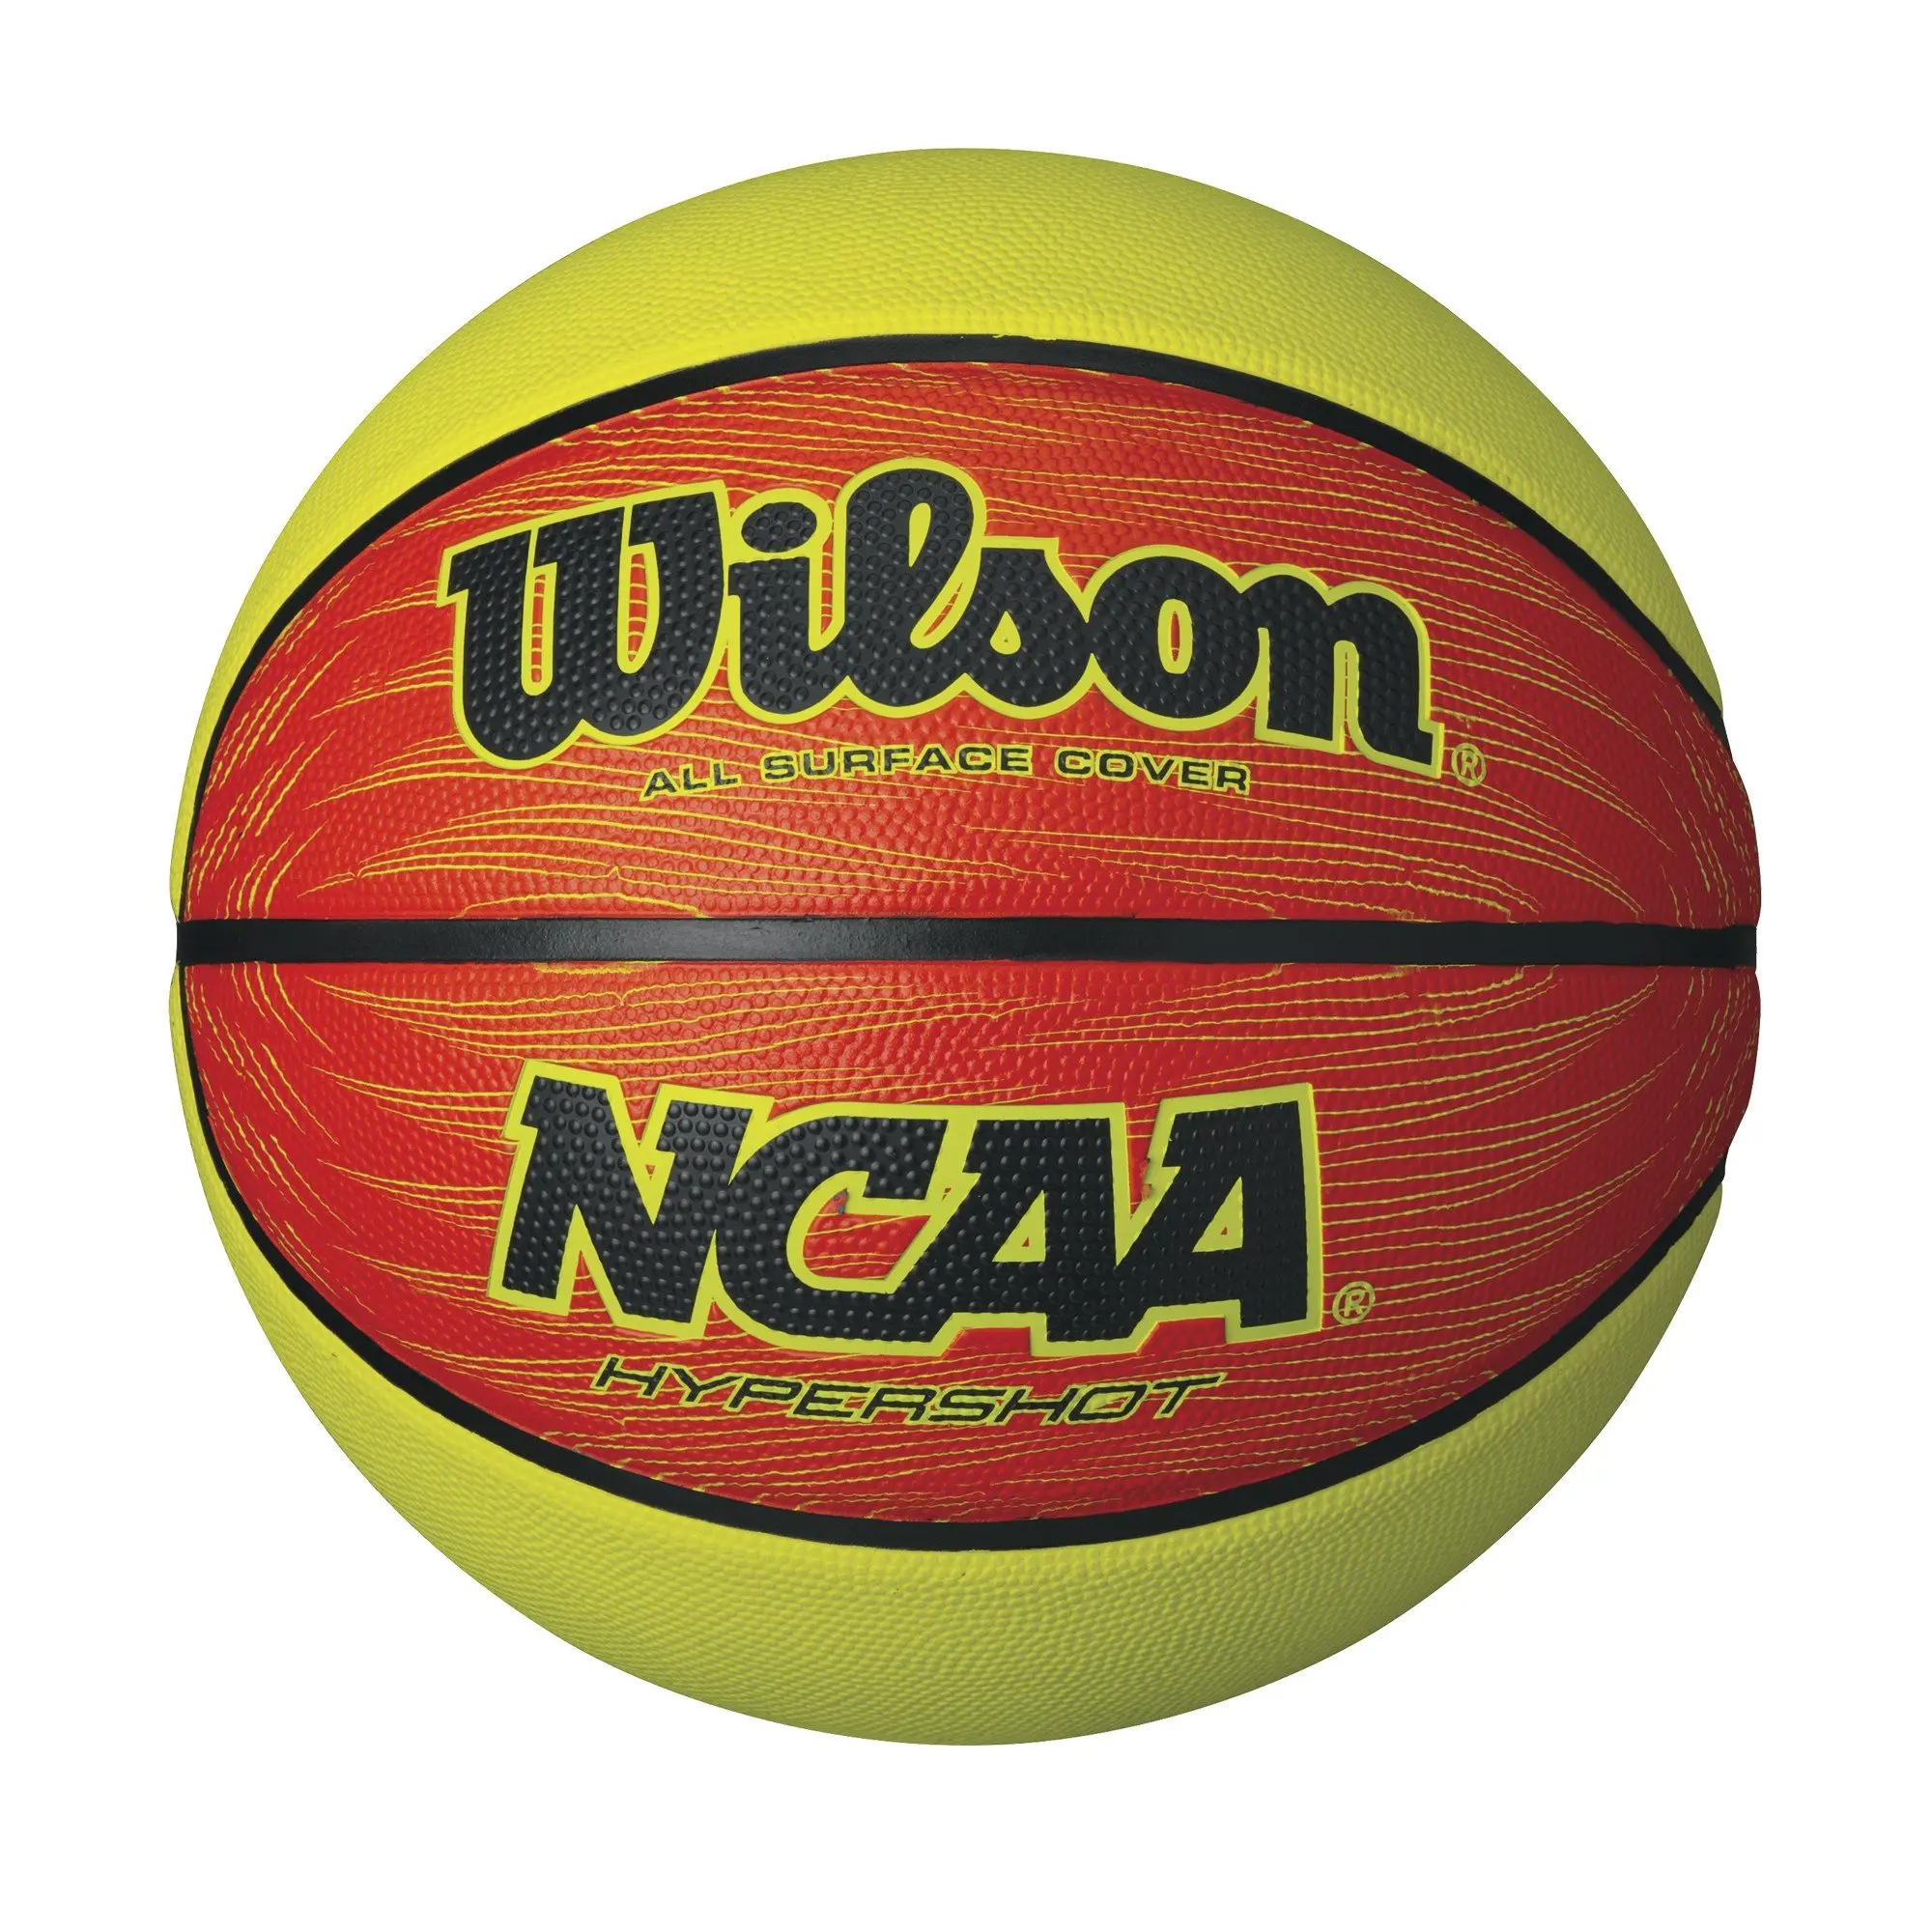 Cheap Wilson Official Basketball, find Wilson Official Basketball deals